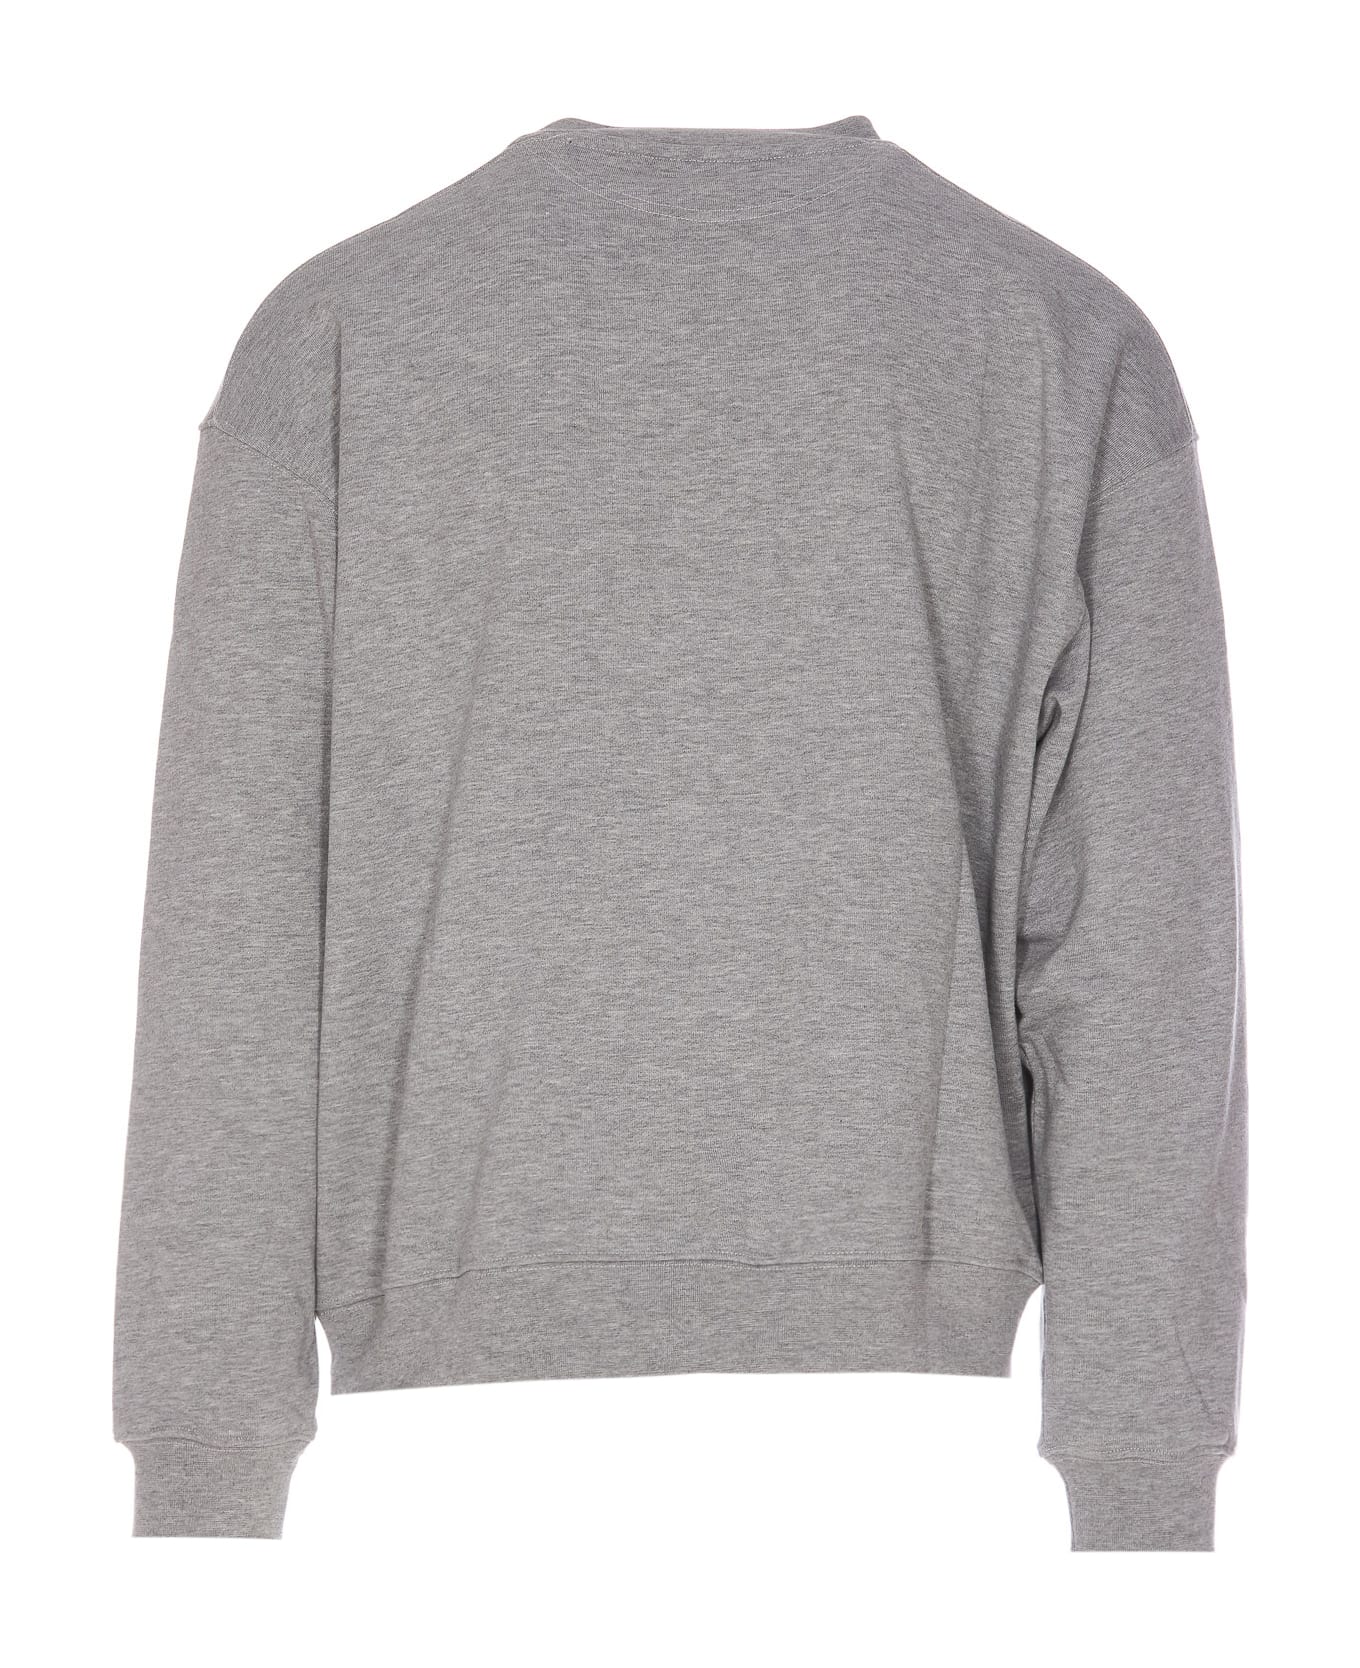 Diadora Sweatshirt - Grey